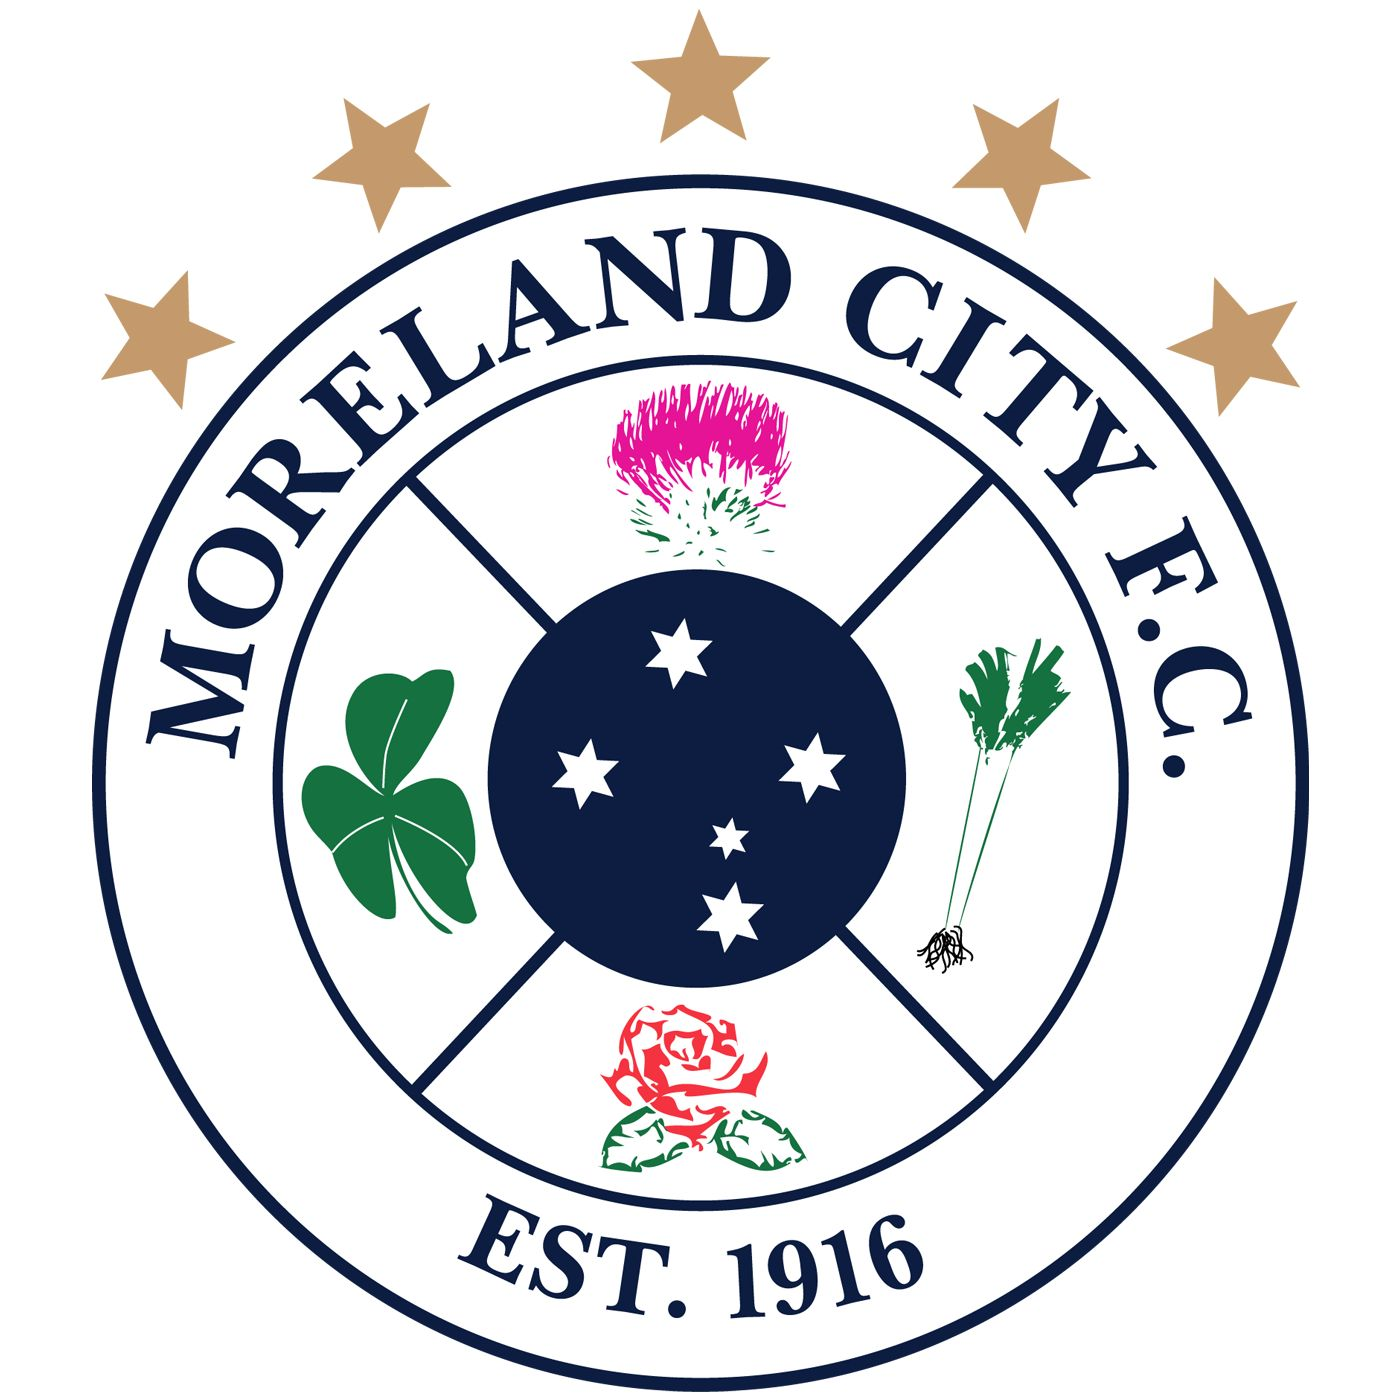 Moreland City team logo